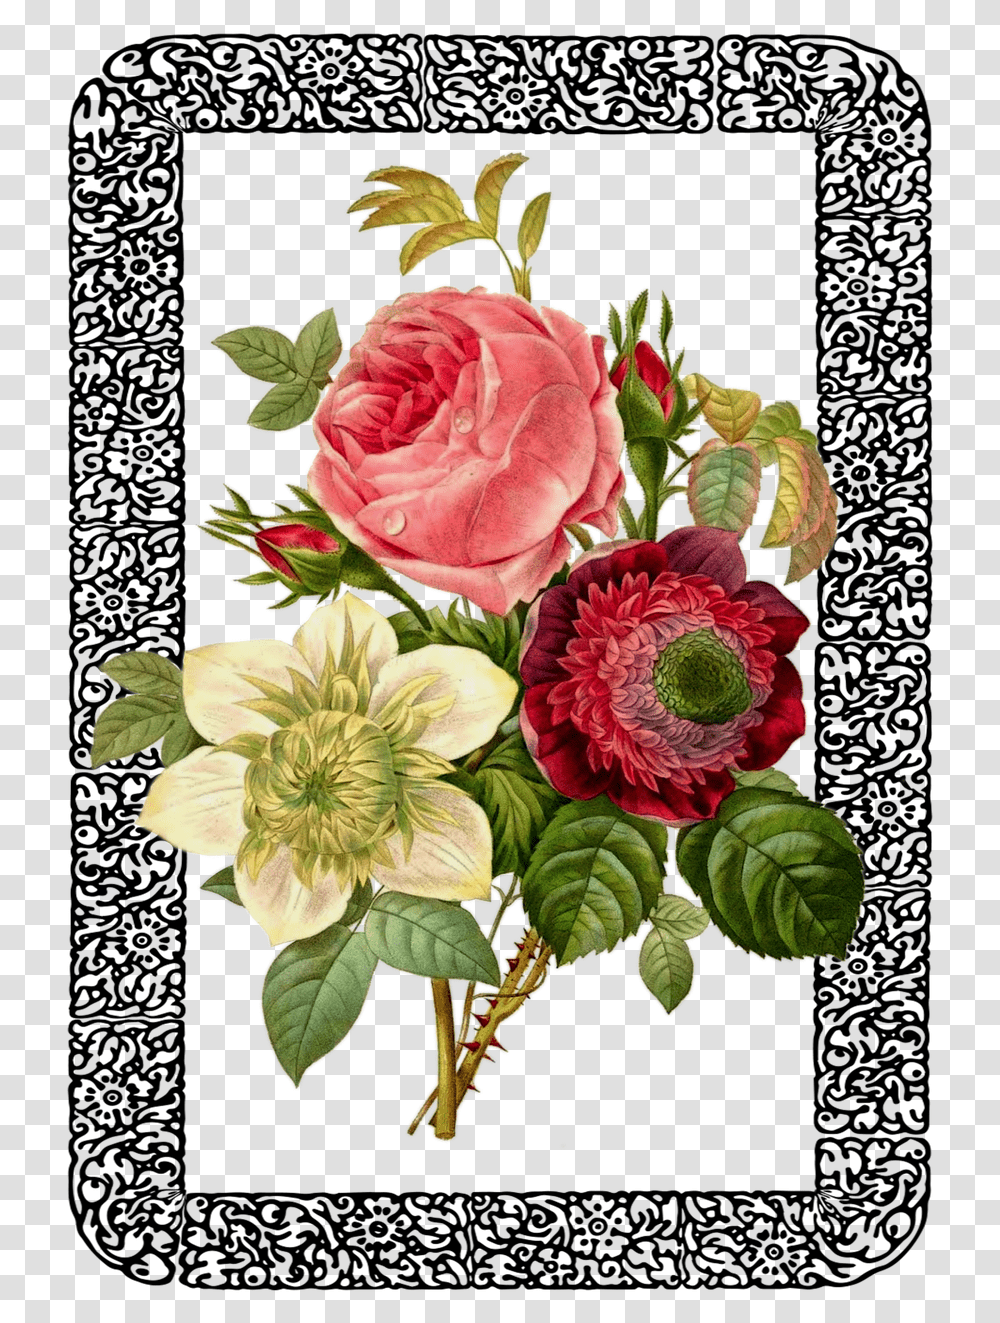 Vintage Rose Bouquet Framed Image Vintage Botanical Prints Peonies Art, Floral Design, Pattern, Flower Transparent Png